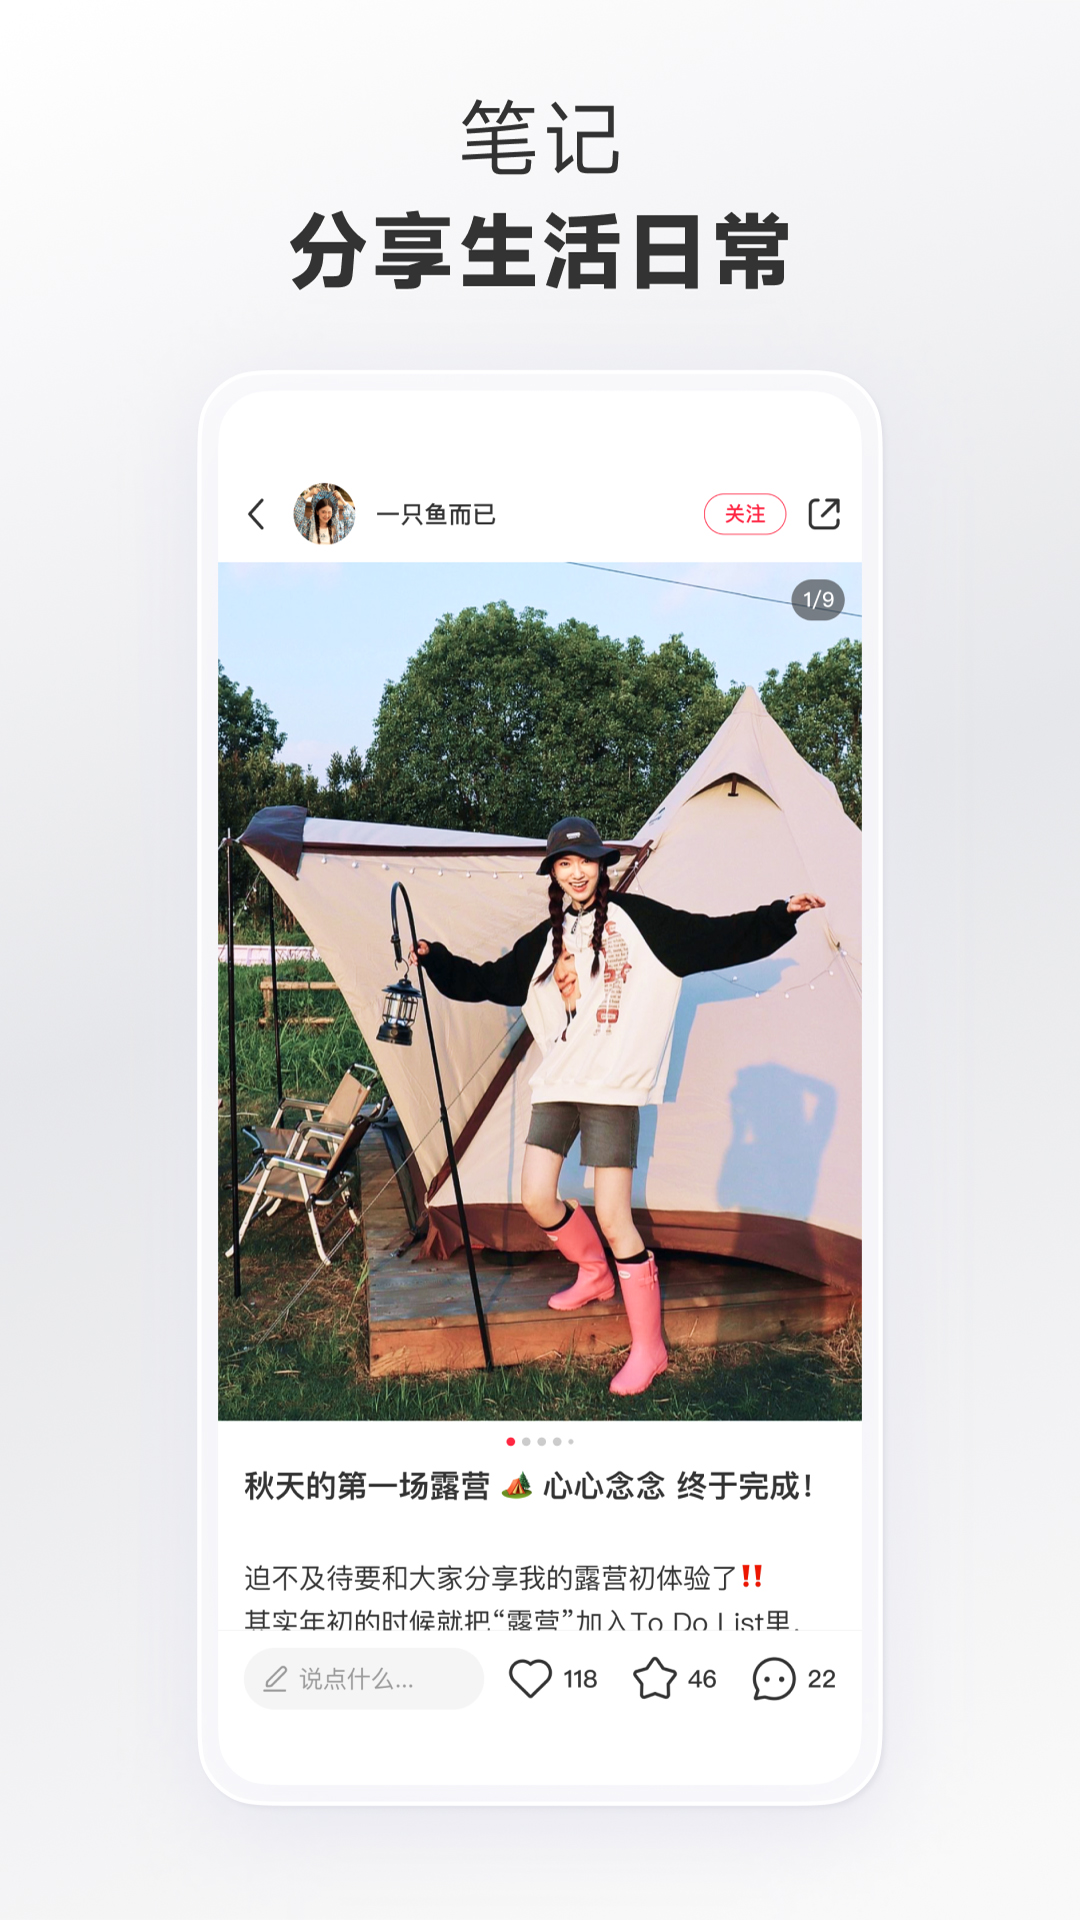 小红书app下载安装免费正版最新版